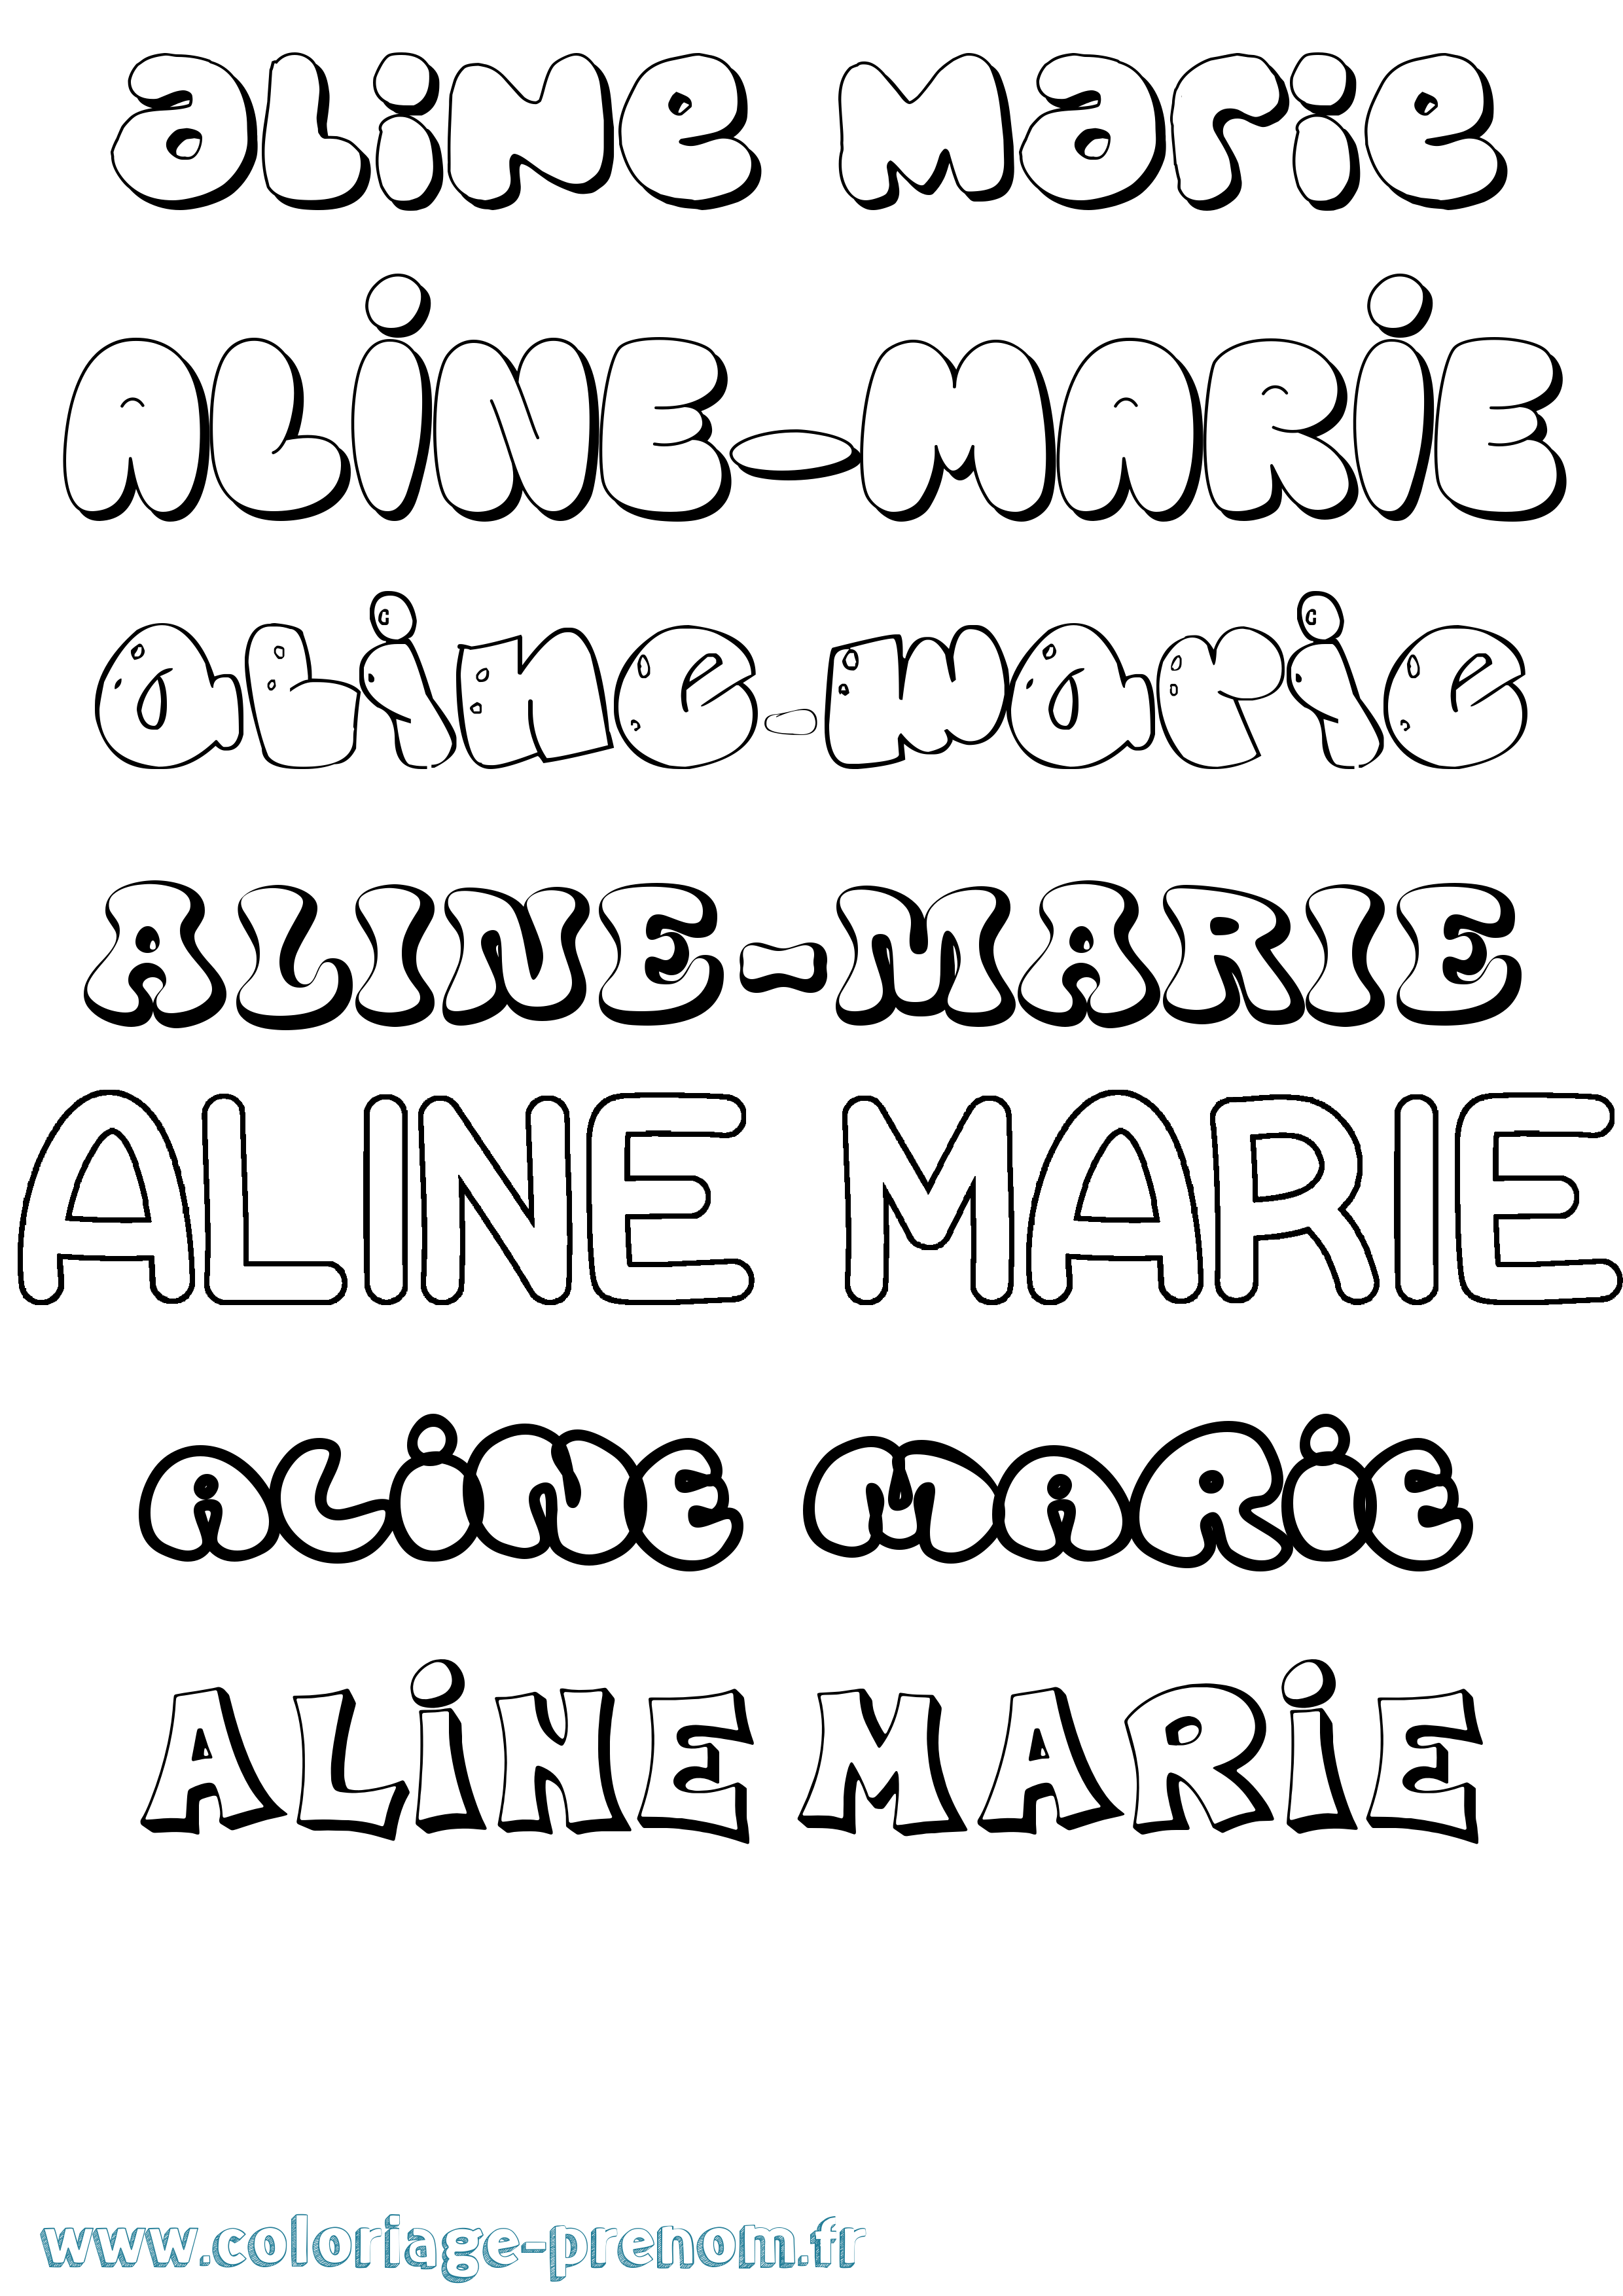 Coloriage prénom Aline-Marie Bubble